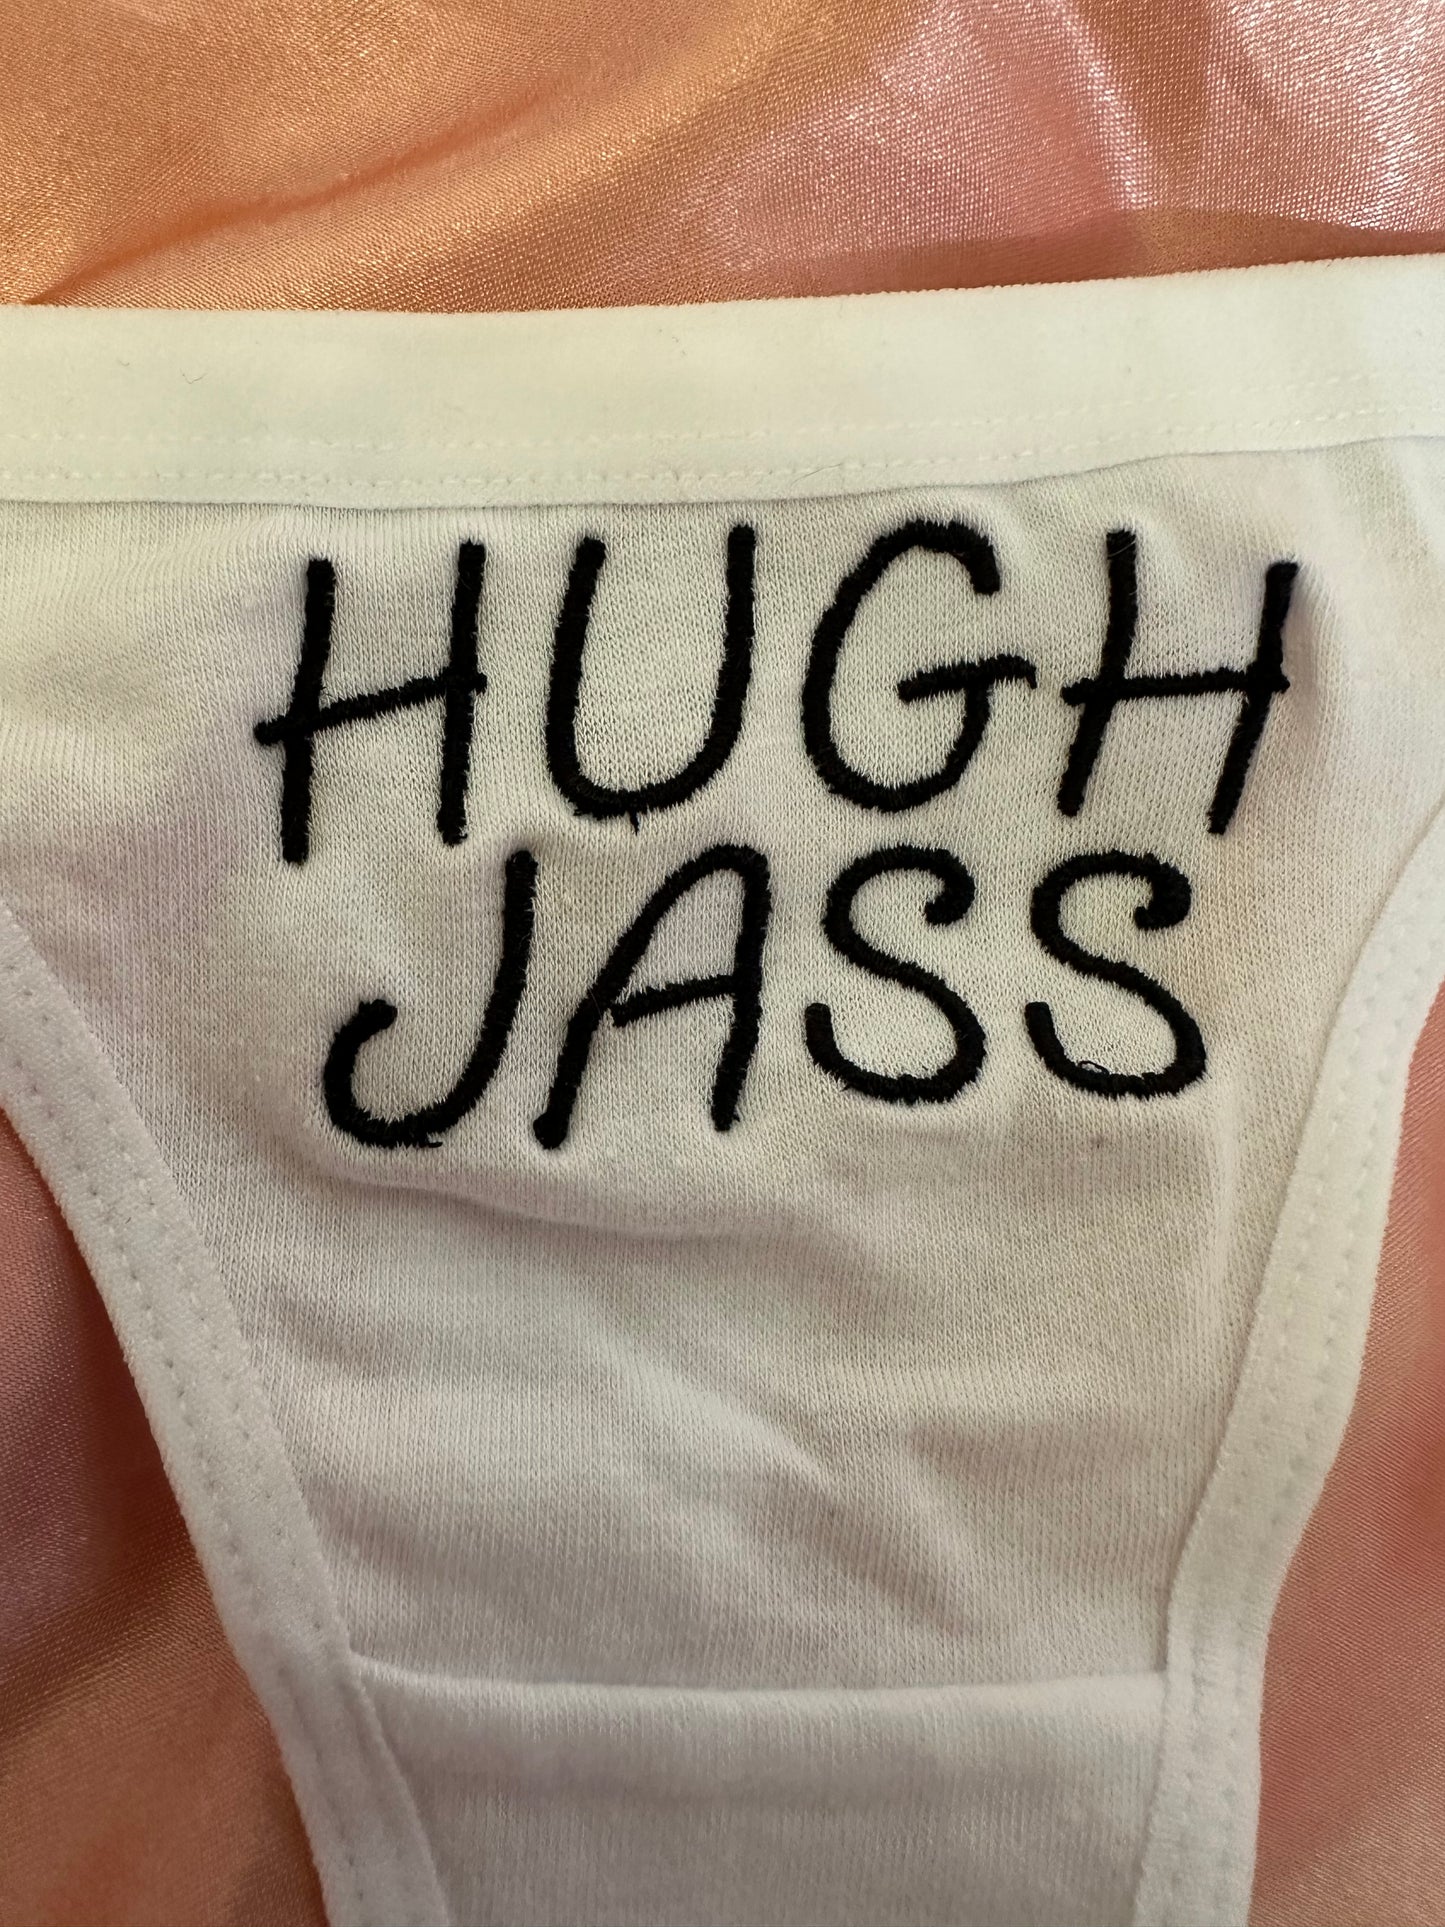 Hugh Jass Thong